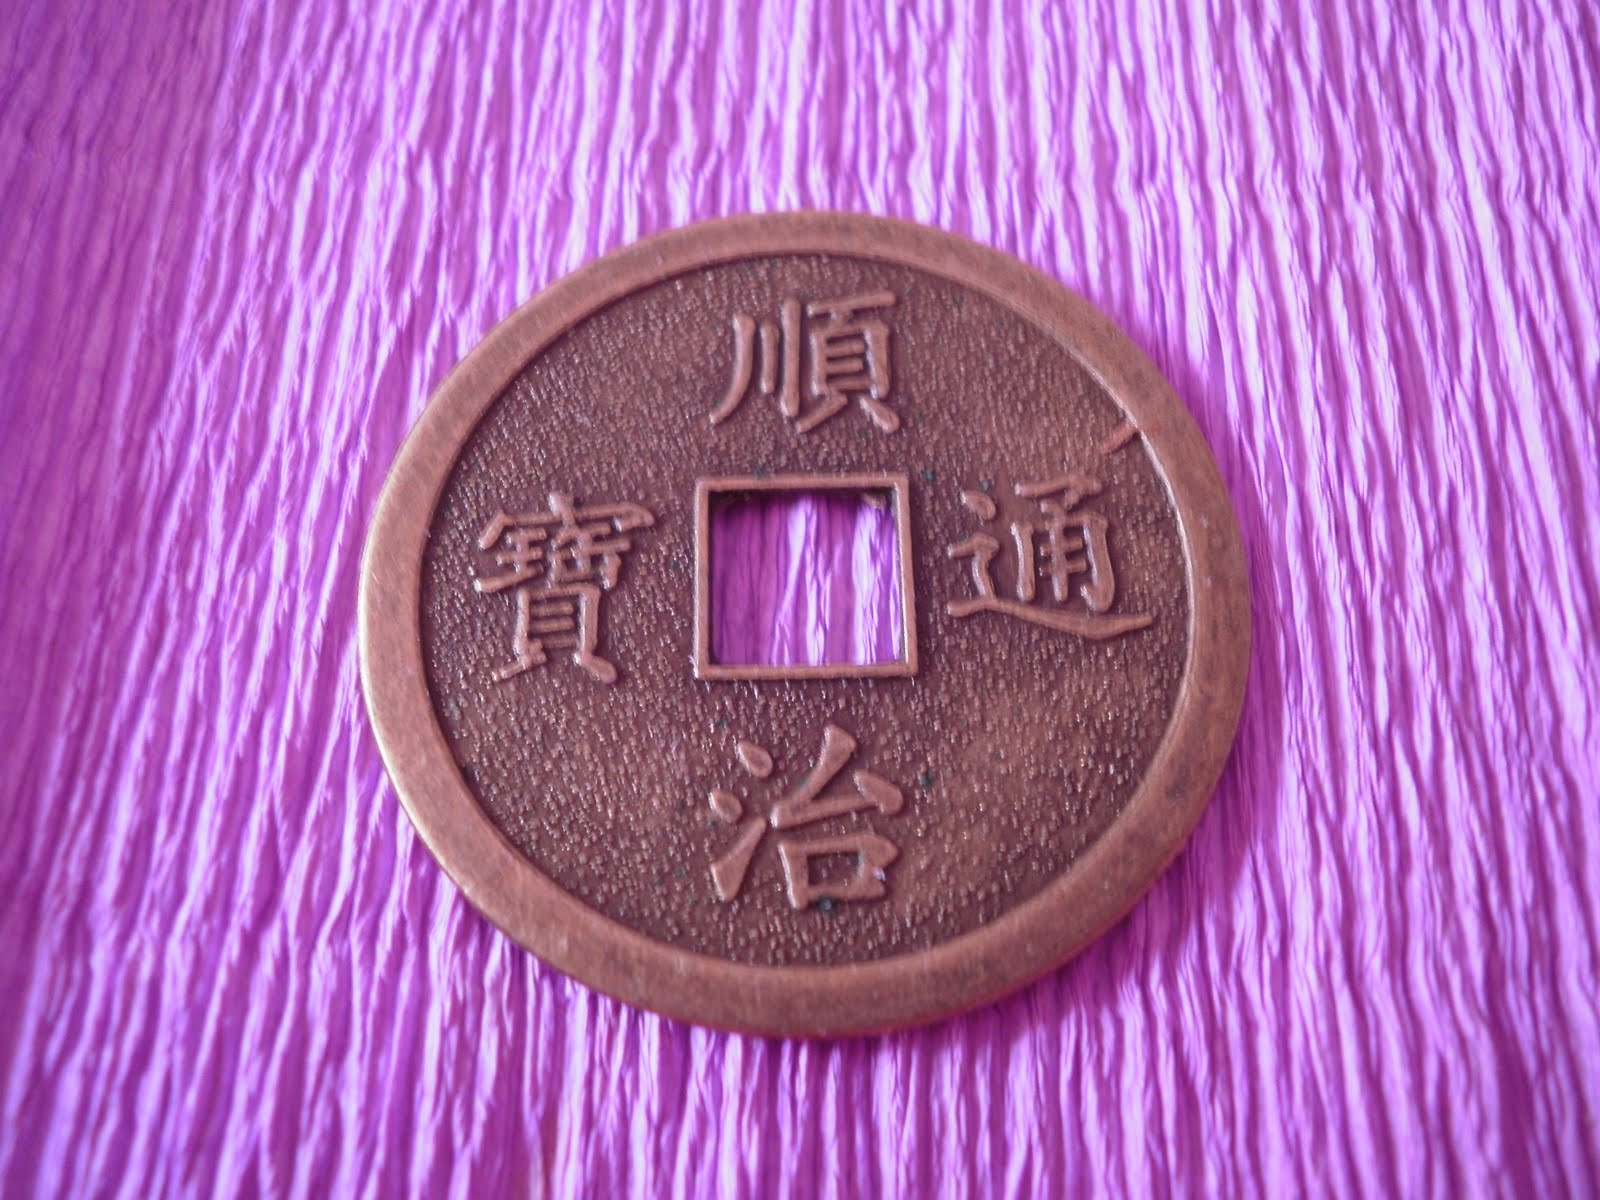 KARATE-DO 空手道: Monedas chinas.